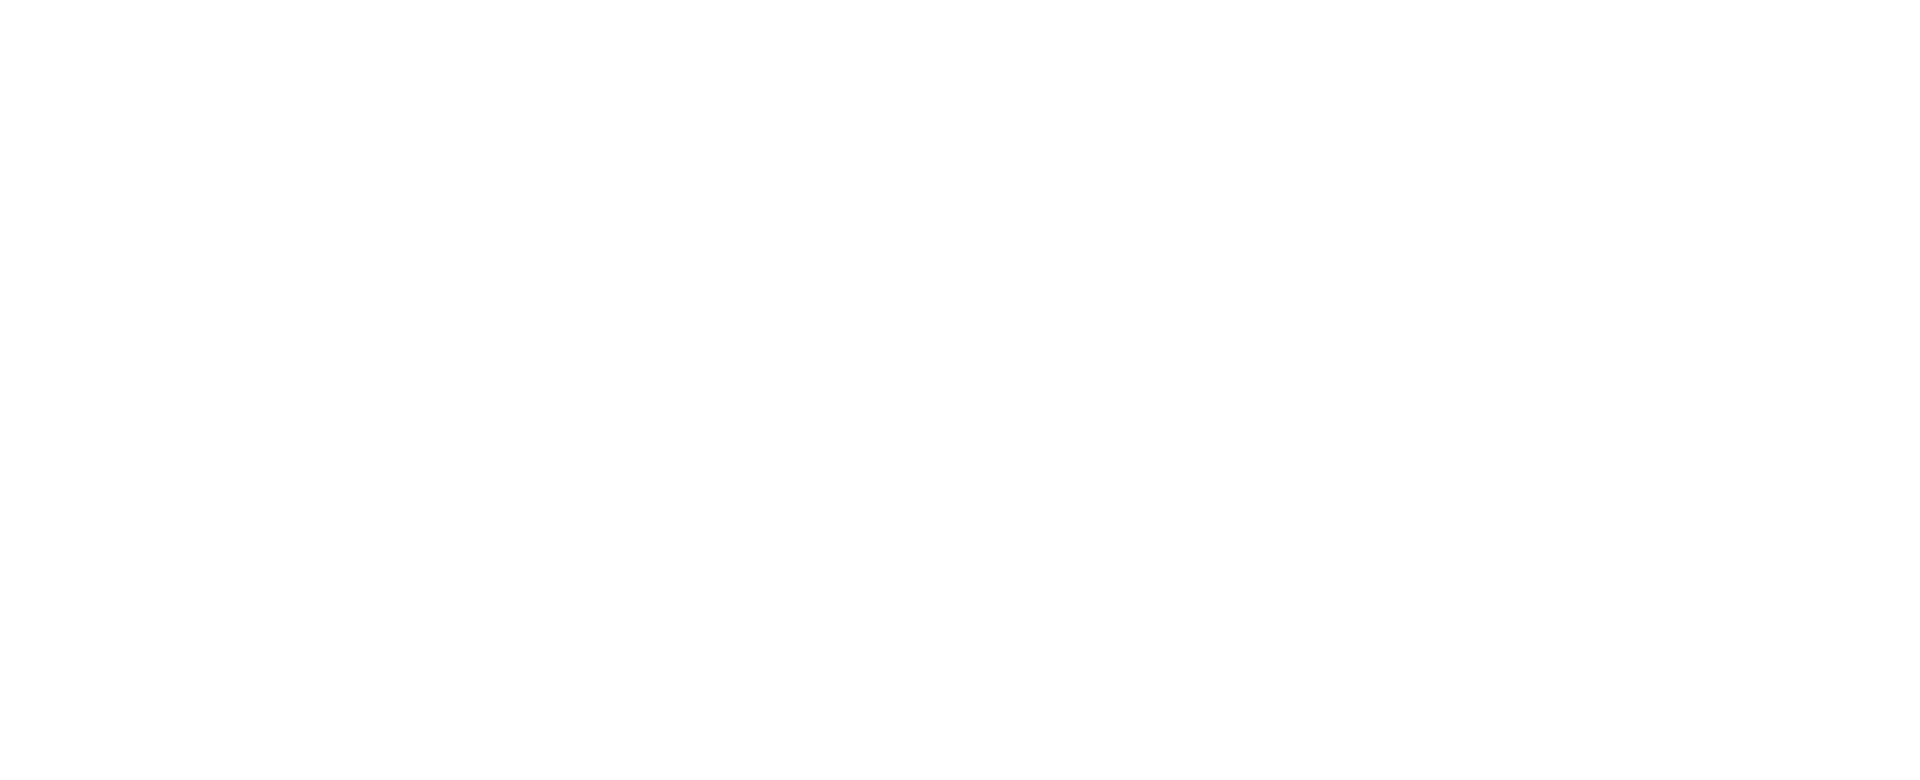 Stolt logo in white